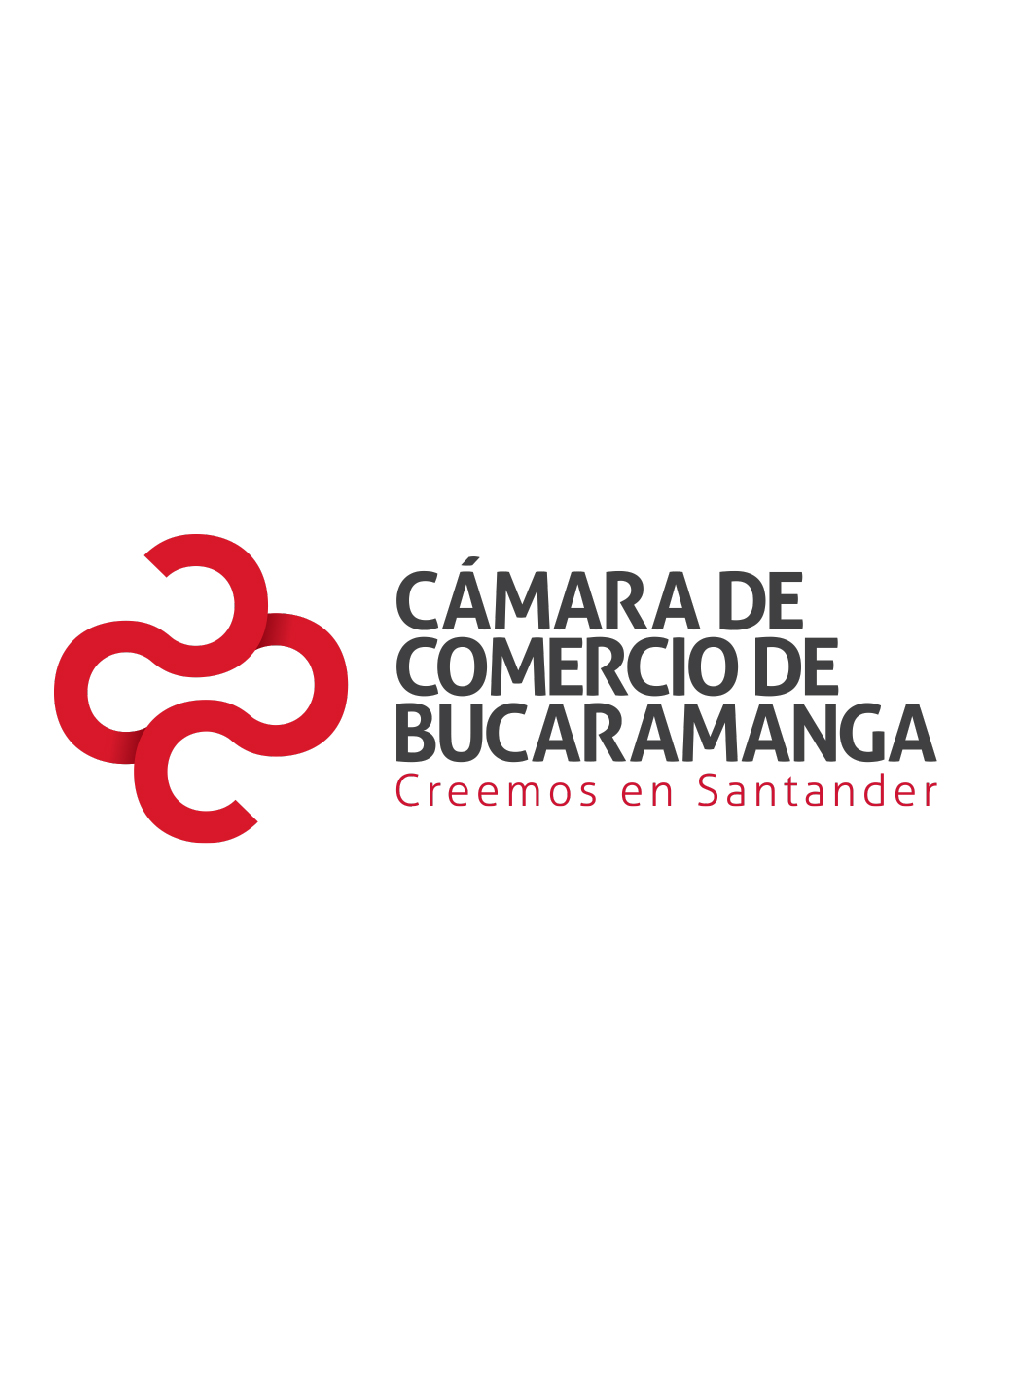 Perfil de las empresas exportadoras de Santander 2013